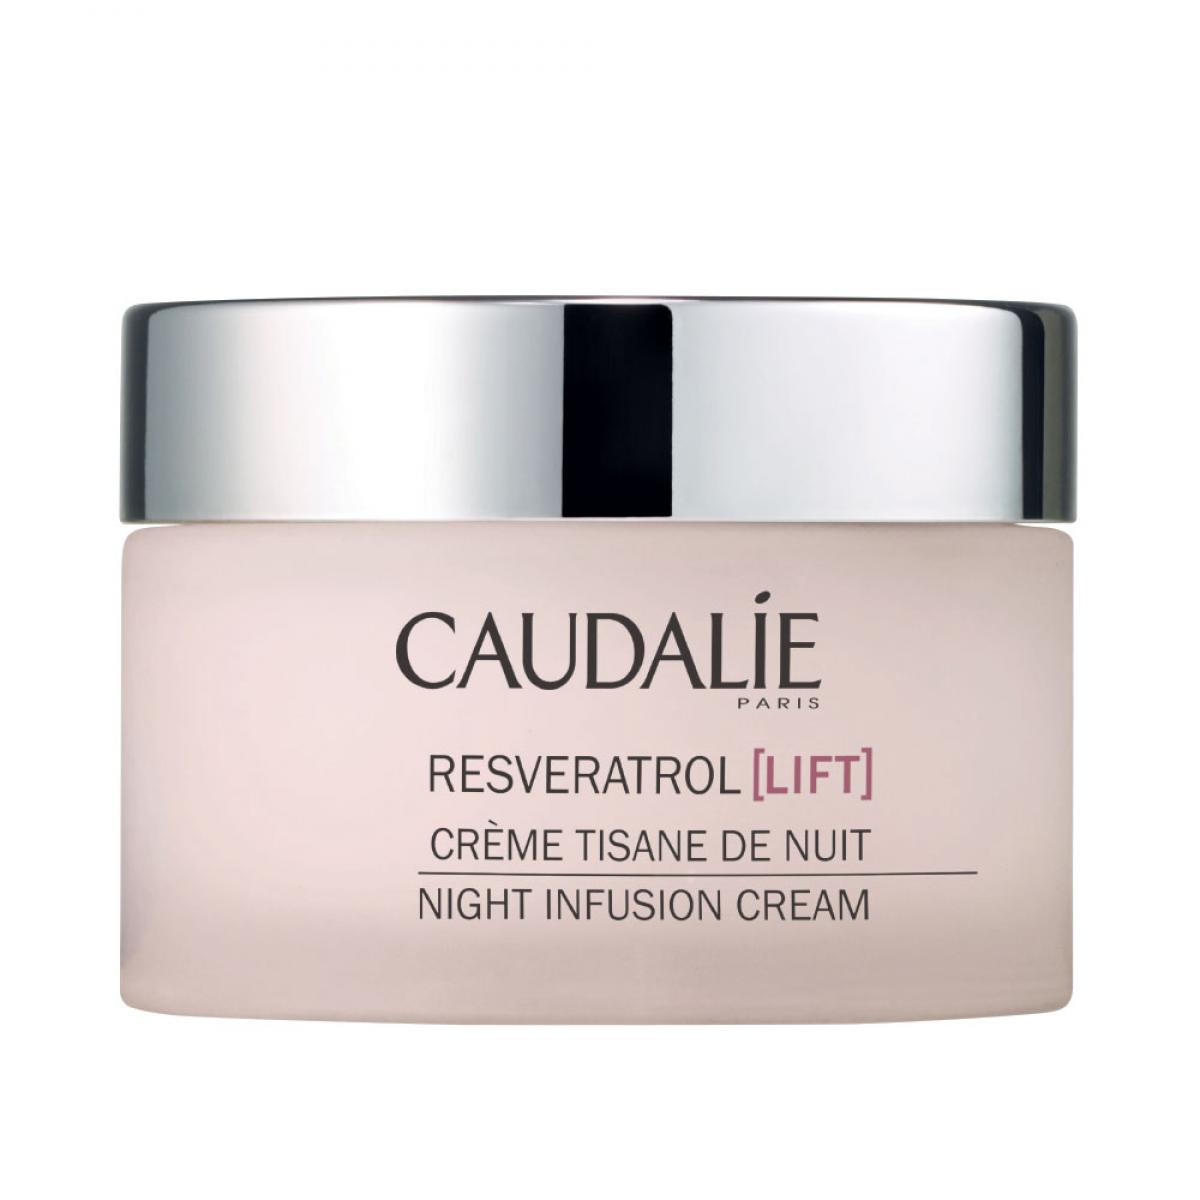 کرم شب رسوراترول لیفت - Resveratrol Lifting Night Infusion Cream